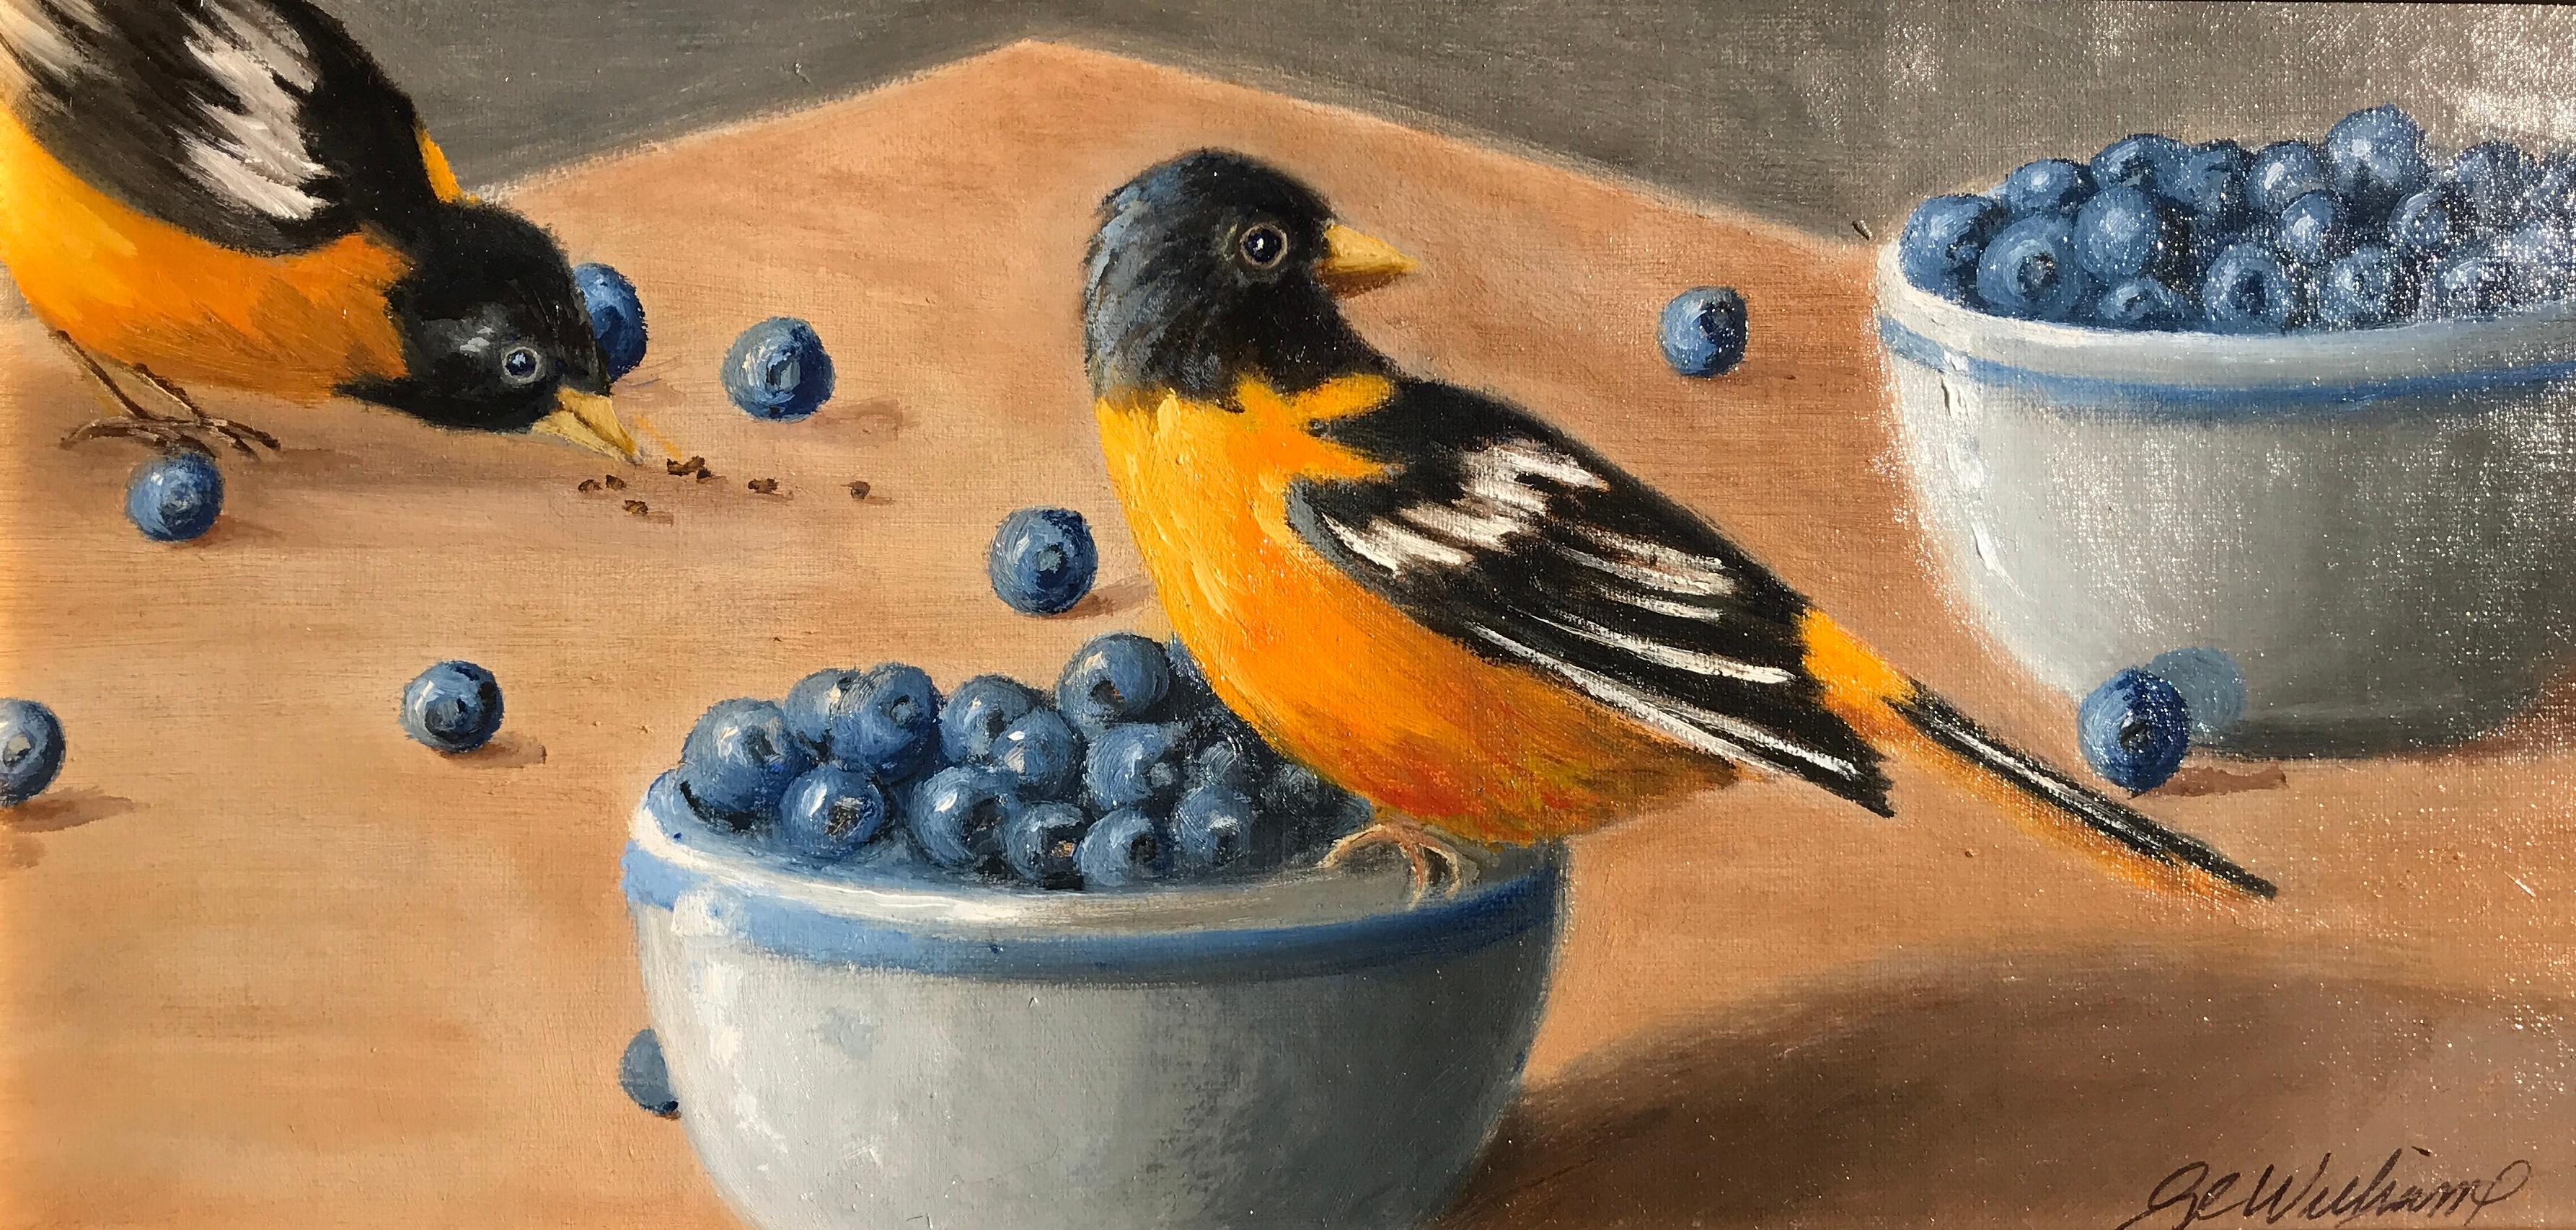 „Birds of a Feather“ ist ein kleines:: vergoldetes:: gerahmtes Ölgemälde auf Karton der amerikanischen Künstlerin Ginny Williams aus dem Jahr 2018. Dieses Gemälde zeigt zwei schöne Vögel in einer Palette aus Orange-:: Blau-:: Schwarz- und Grautönen